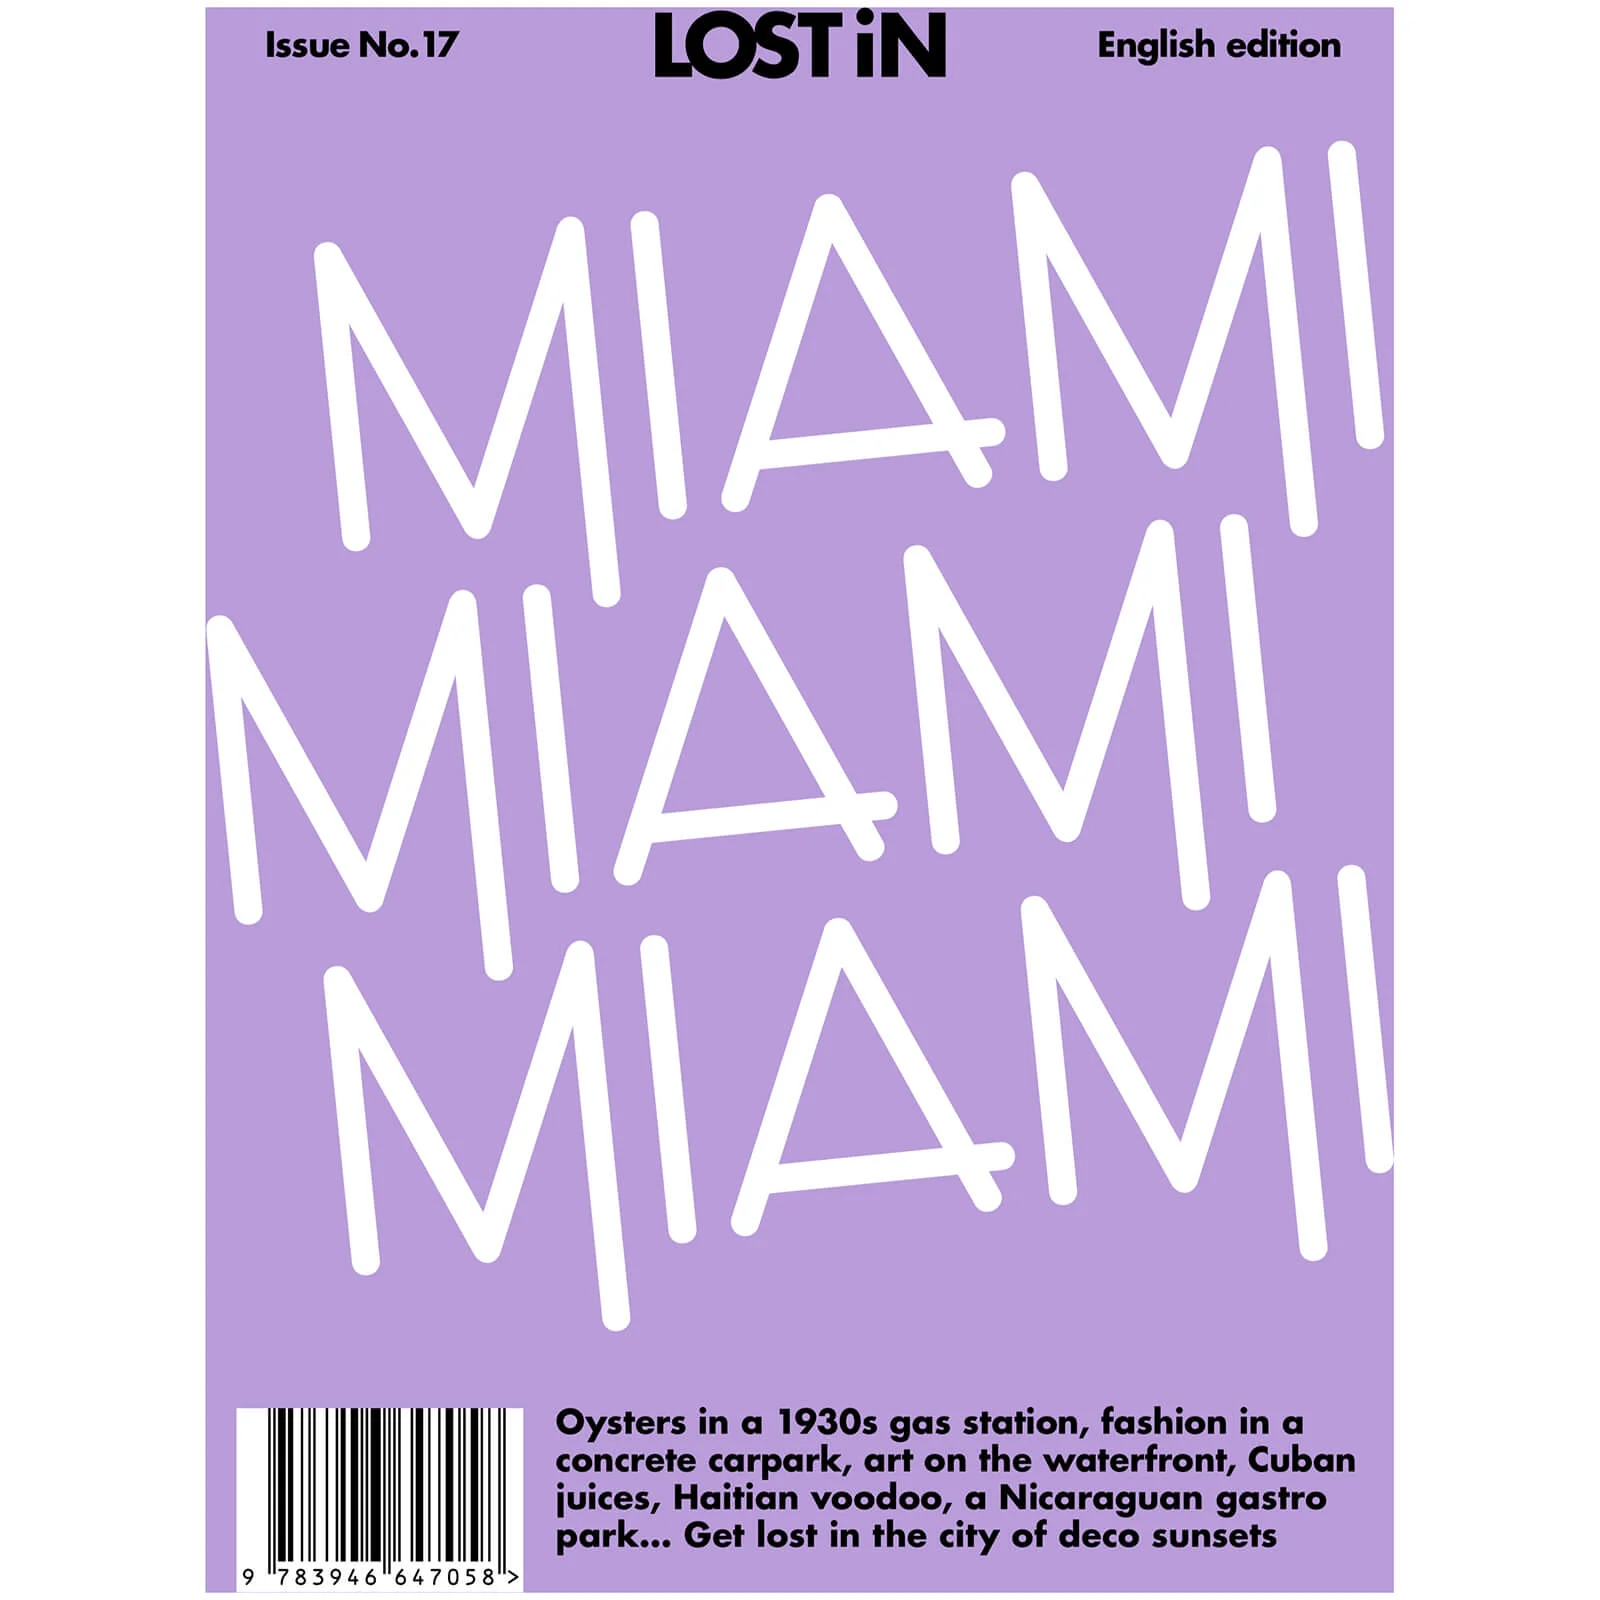 Lost In: Miami Image 1